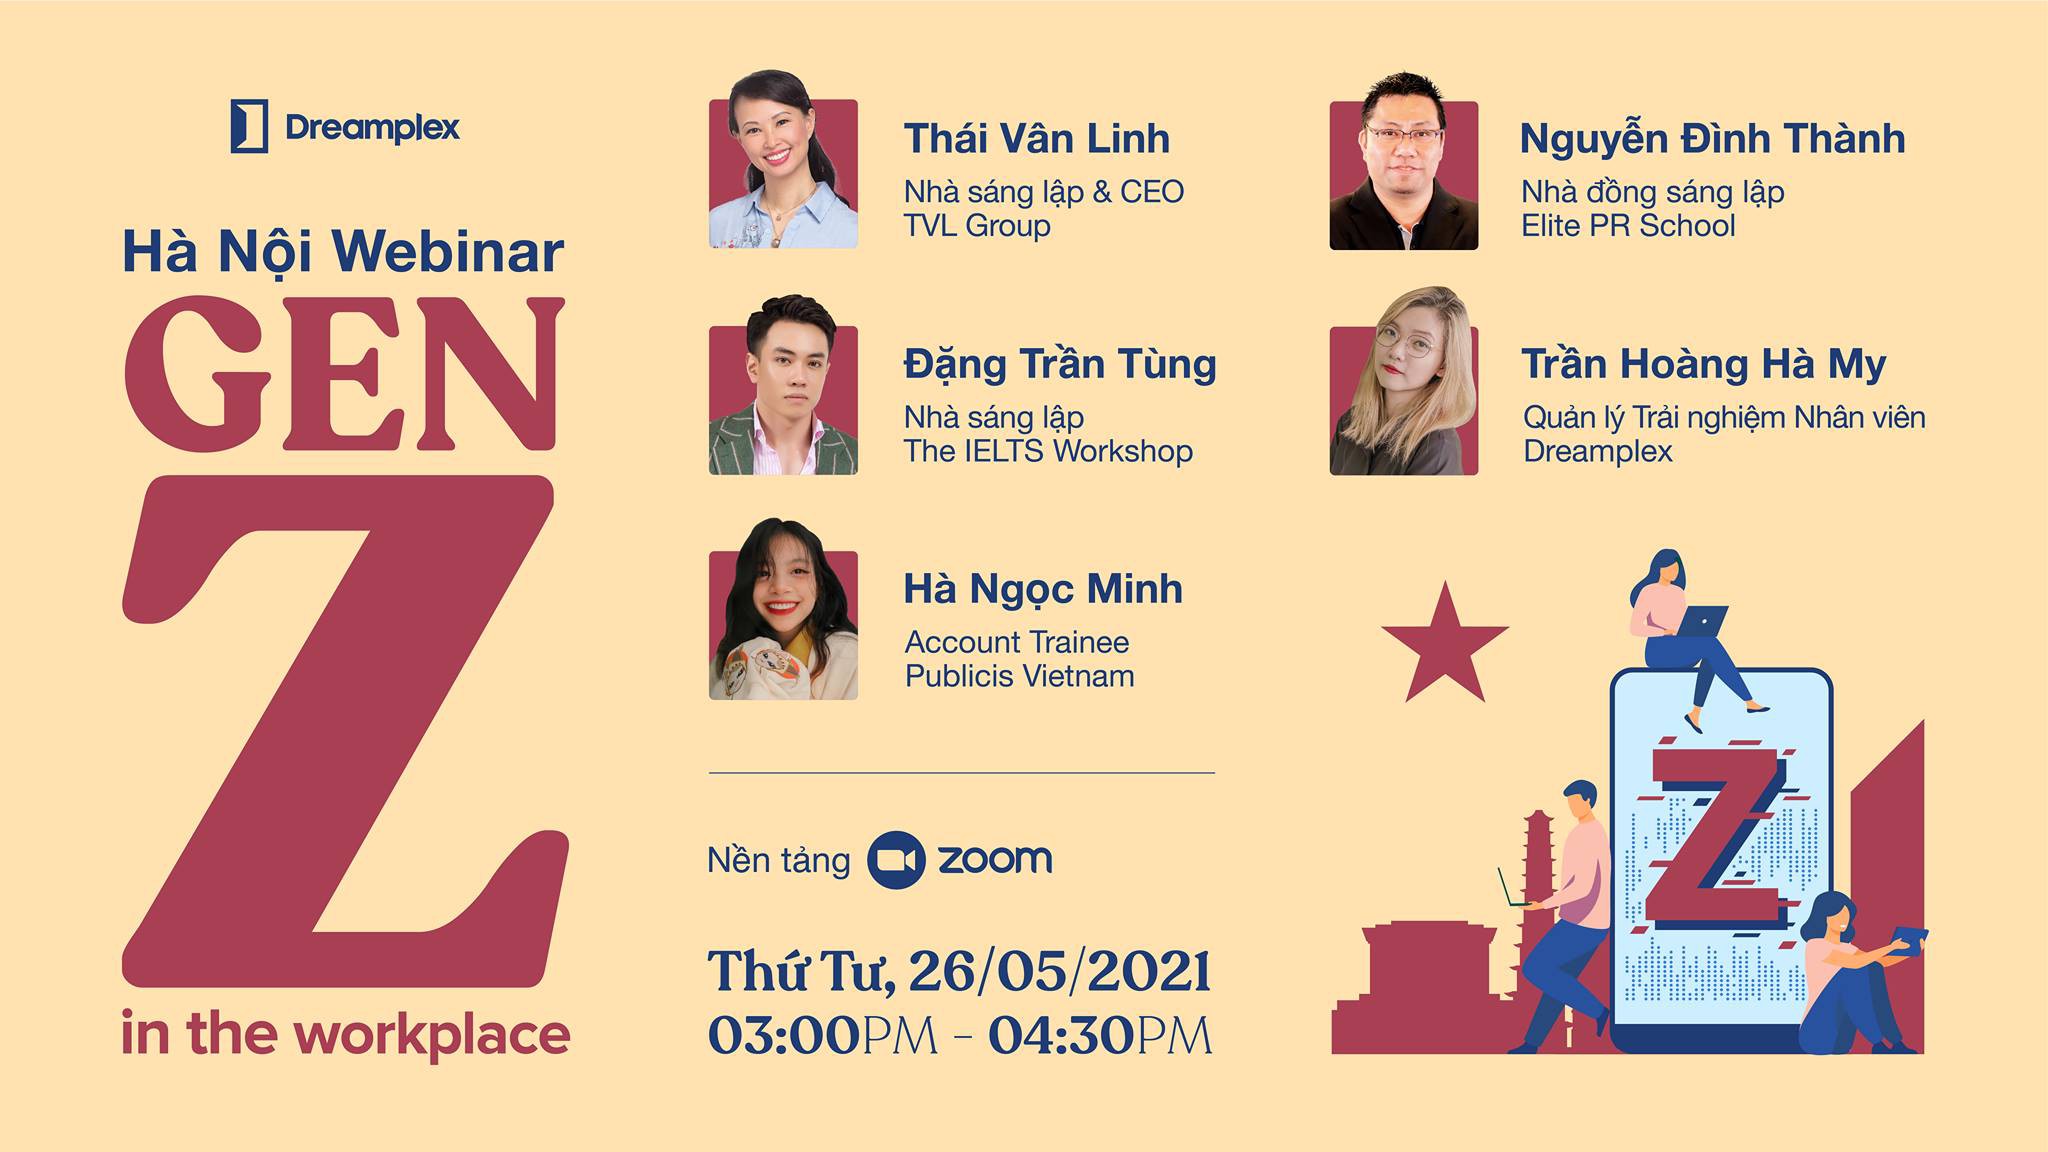 Hanoi Webinar: Gen Z in the Workplace